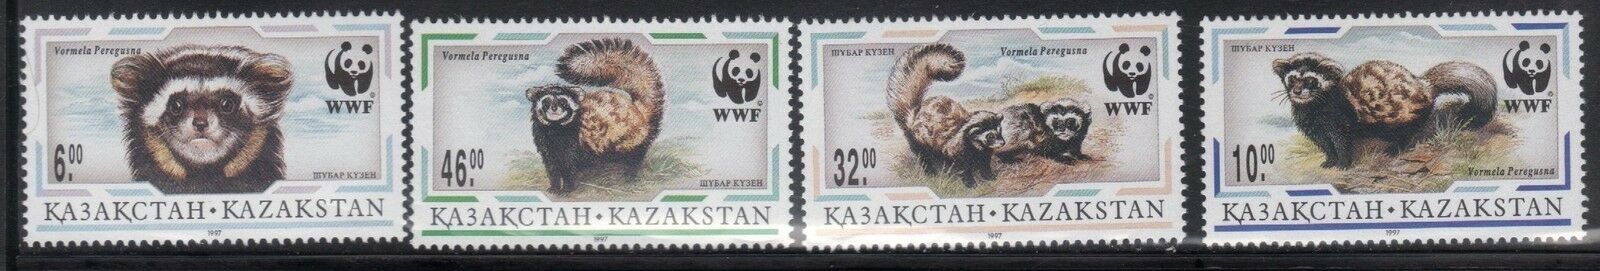 Kazakstan 171-4 World Wildlife Fund Animals Mint Nh